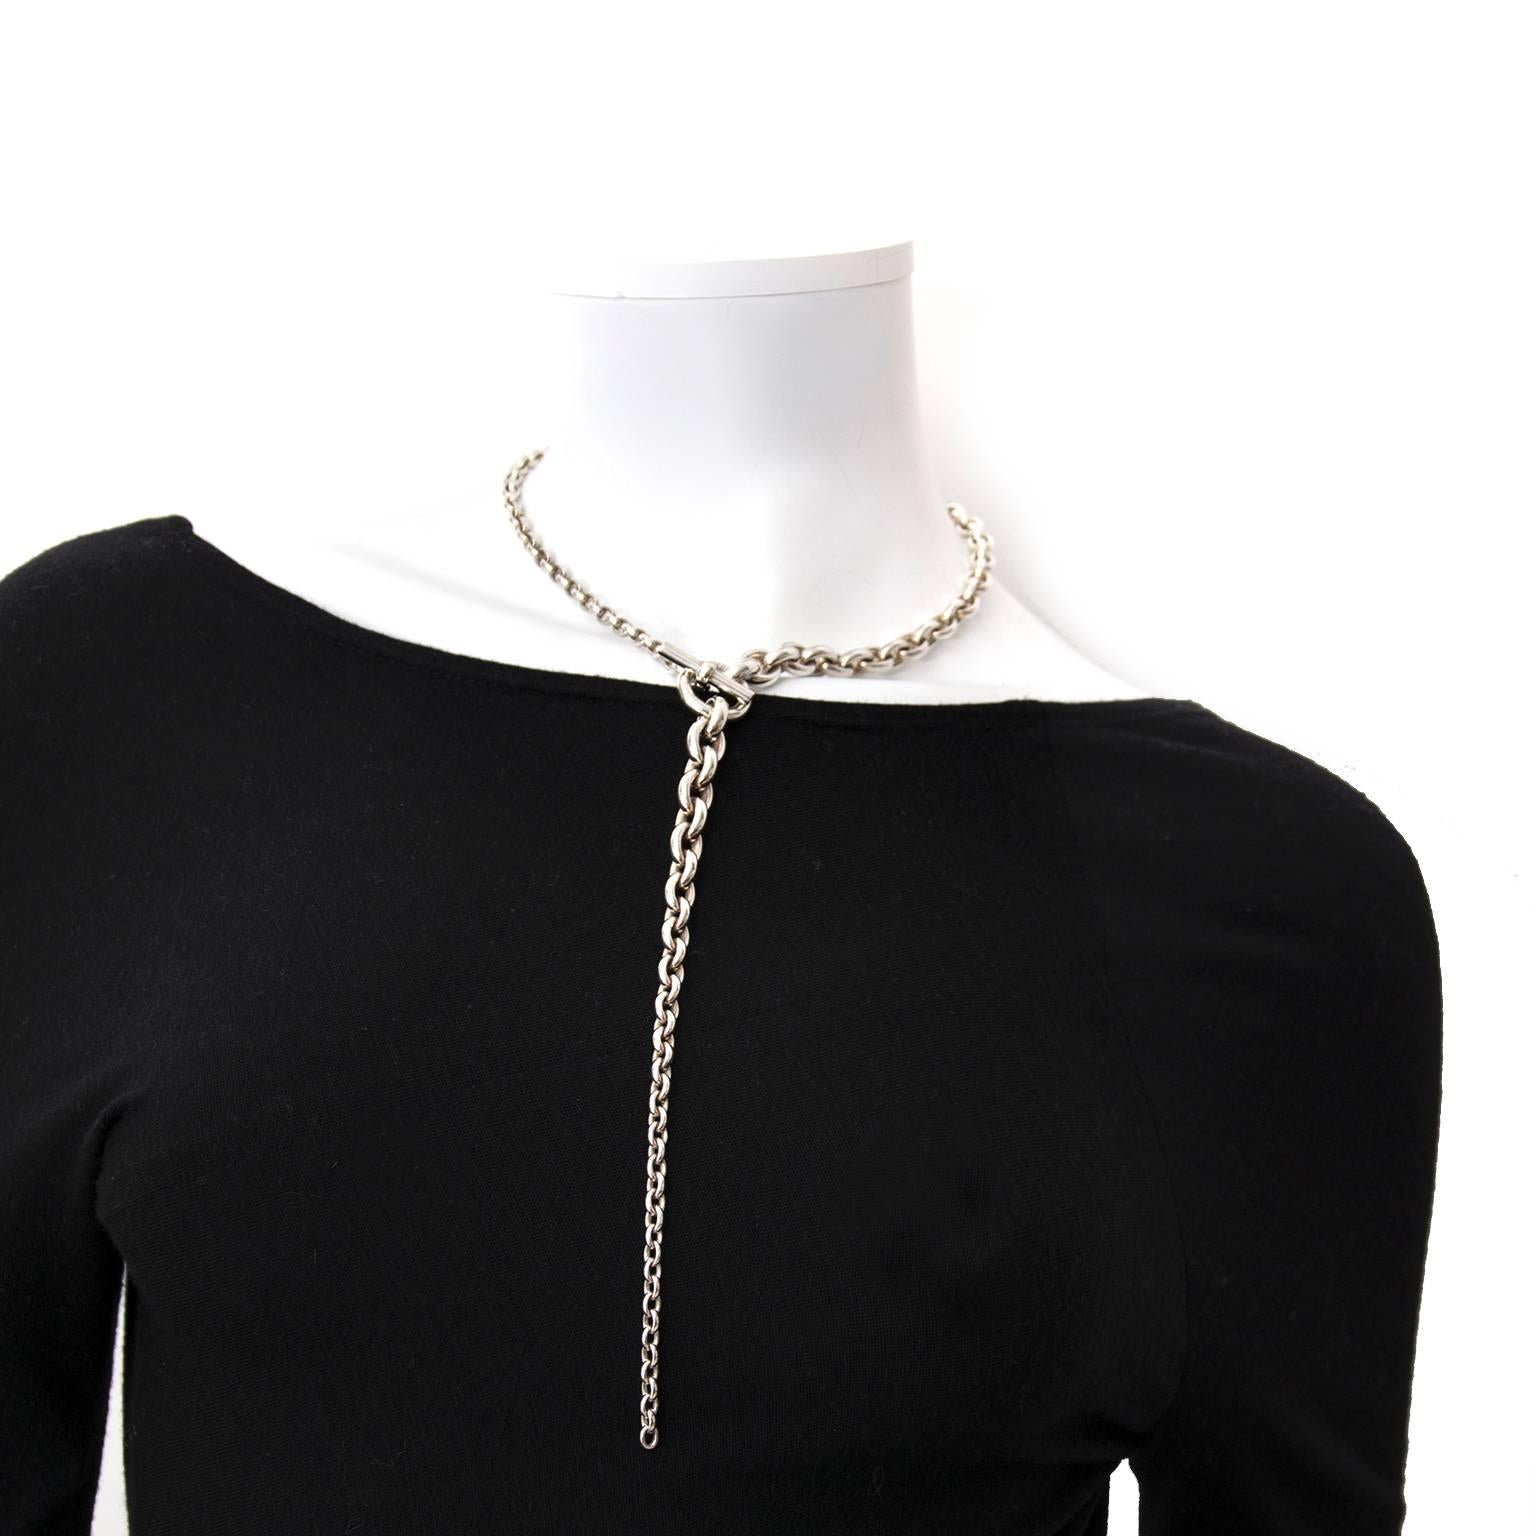 60cm necklace